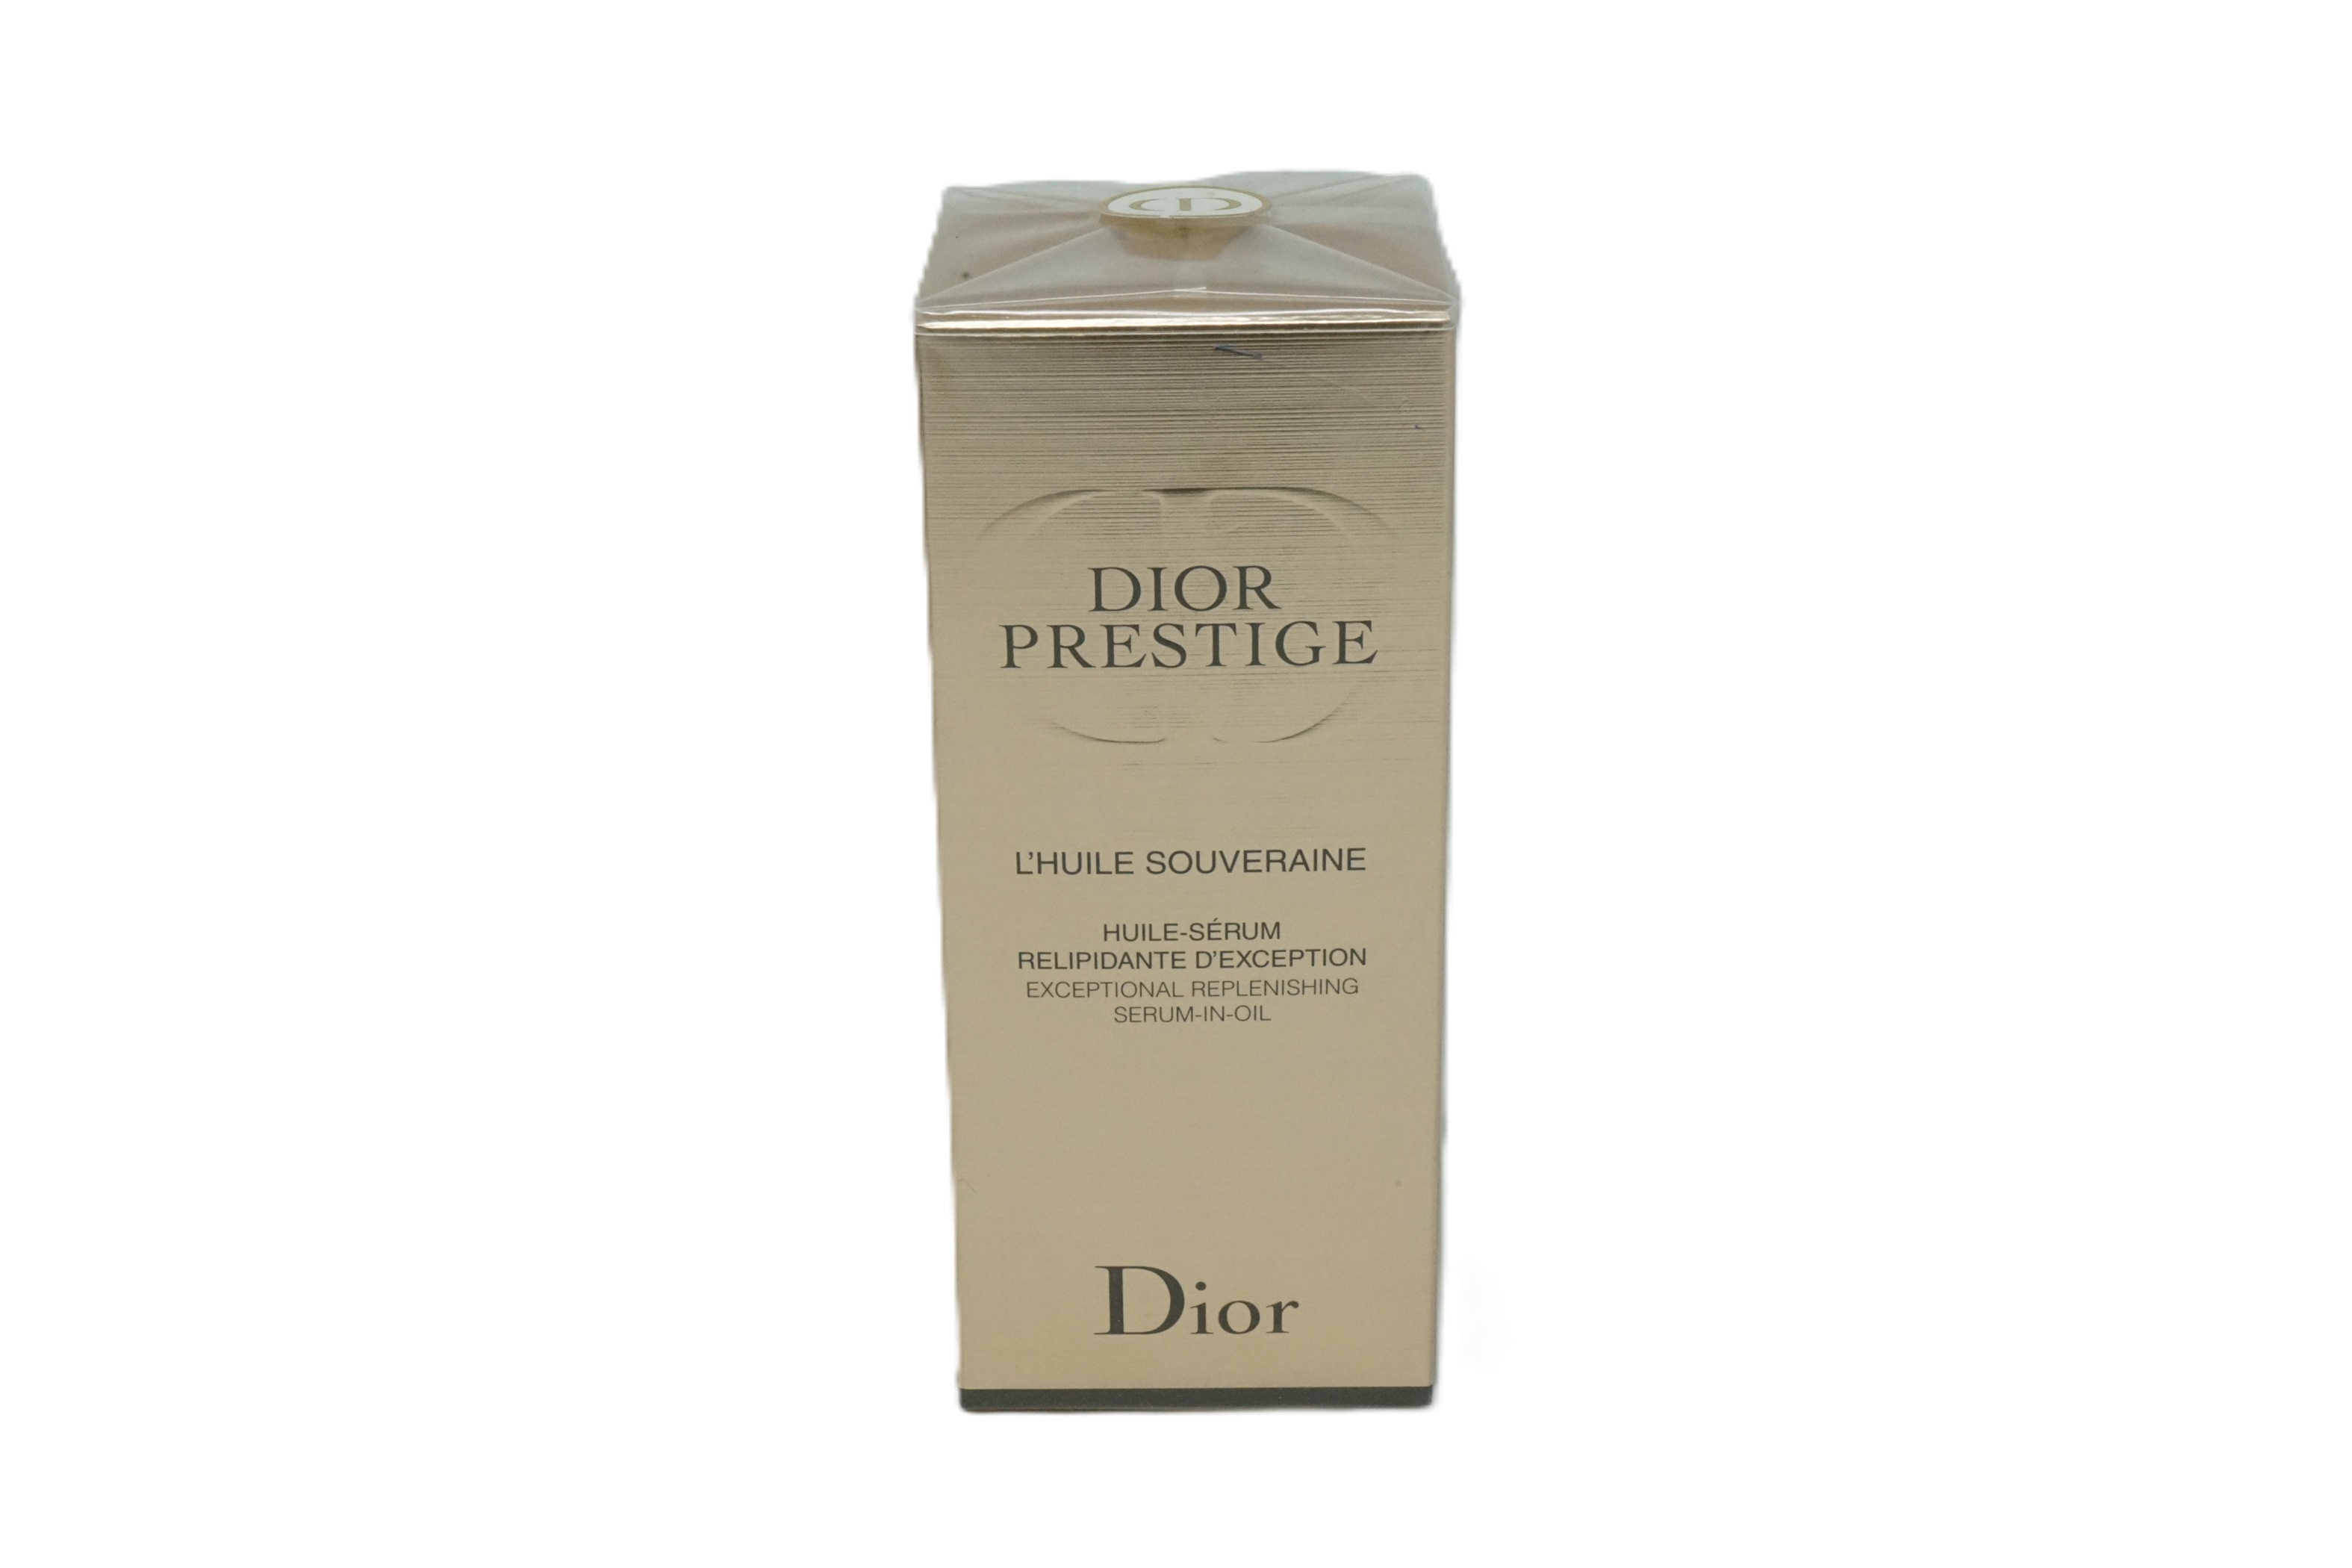 Dior Prestige L'Huile Souveraine Serum-in-oil 30 ml